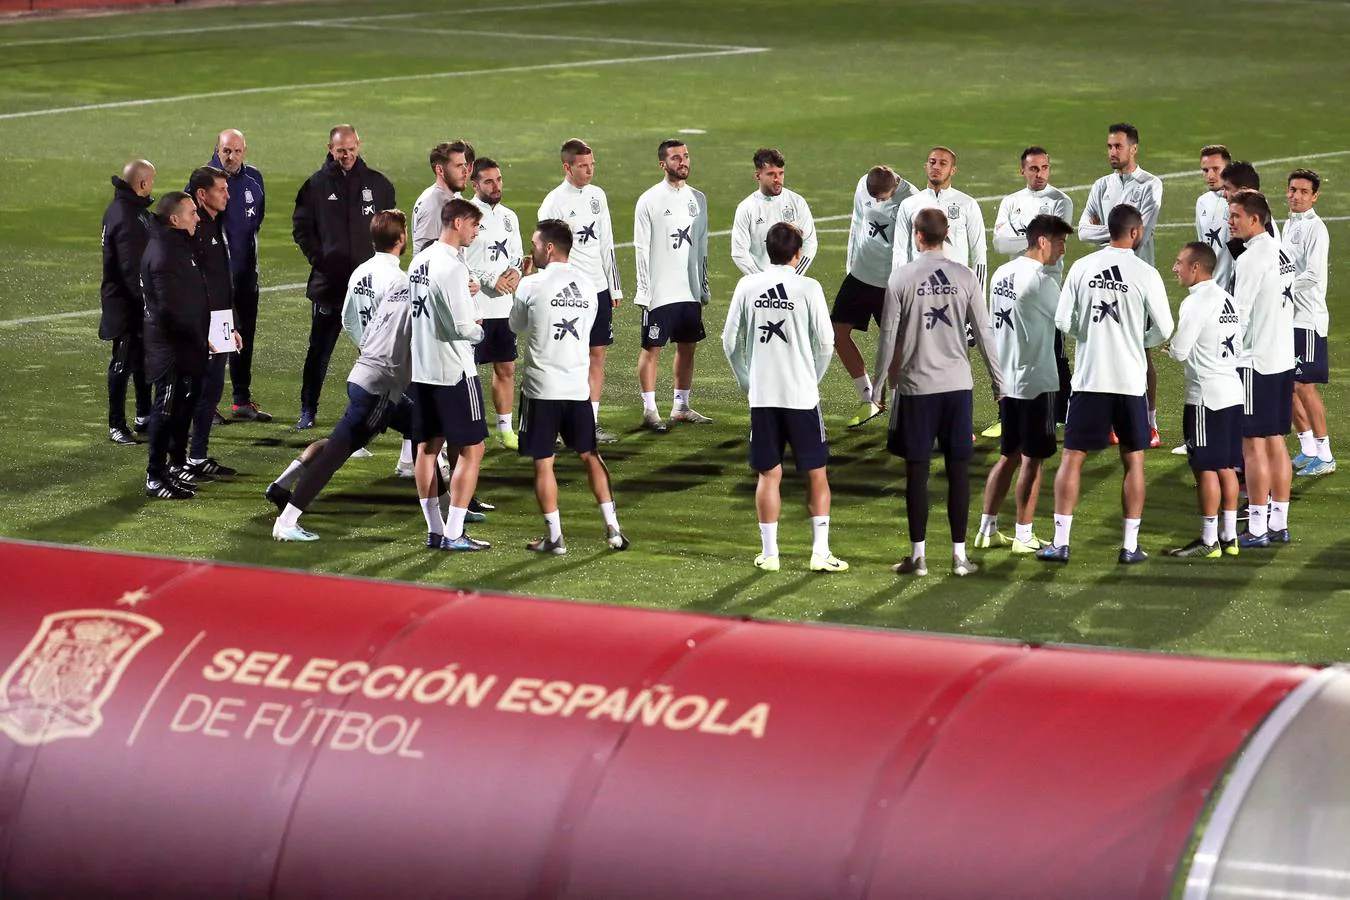 La selección española se entrena antes de venir a Cádiz